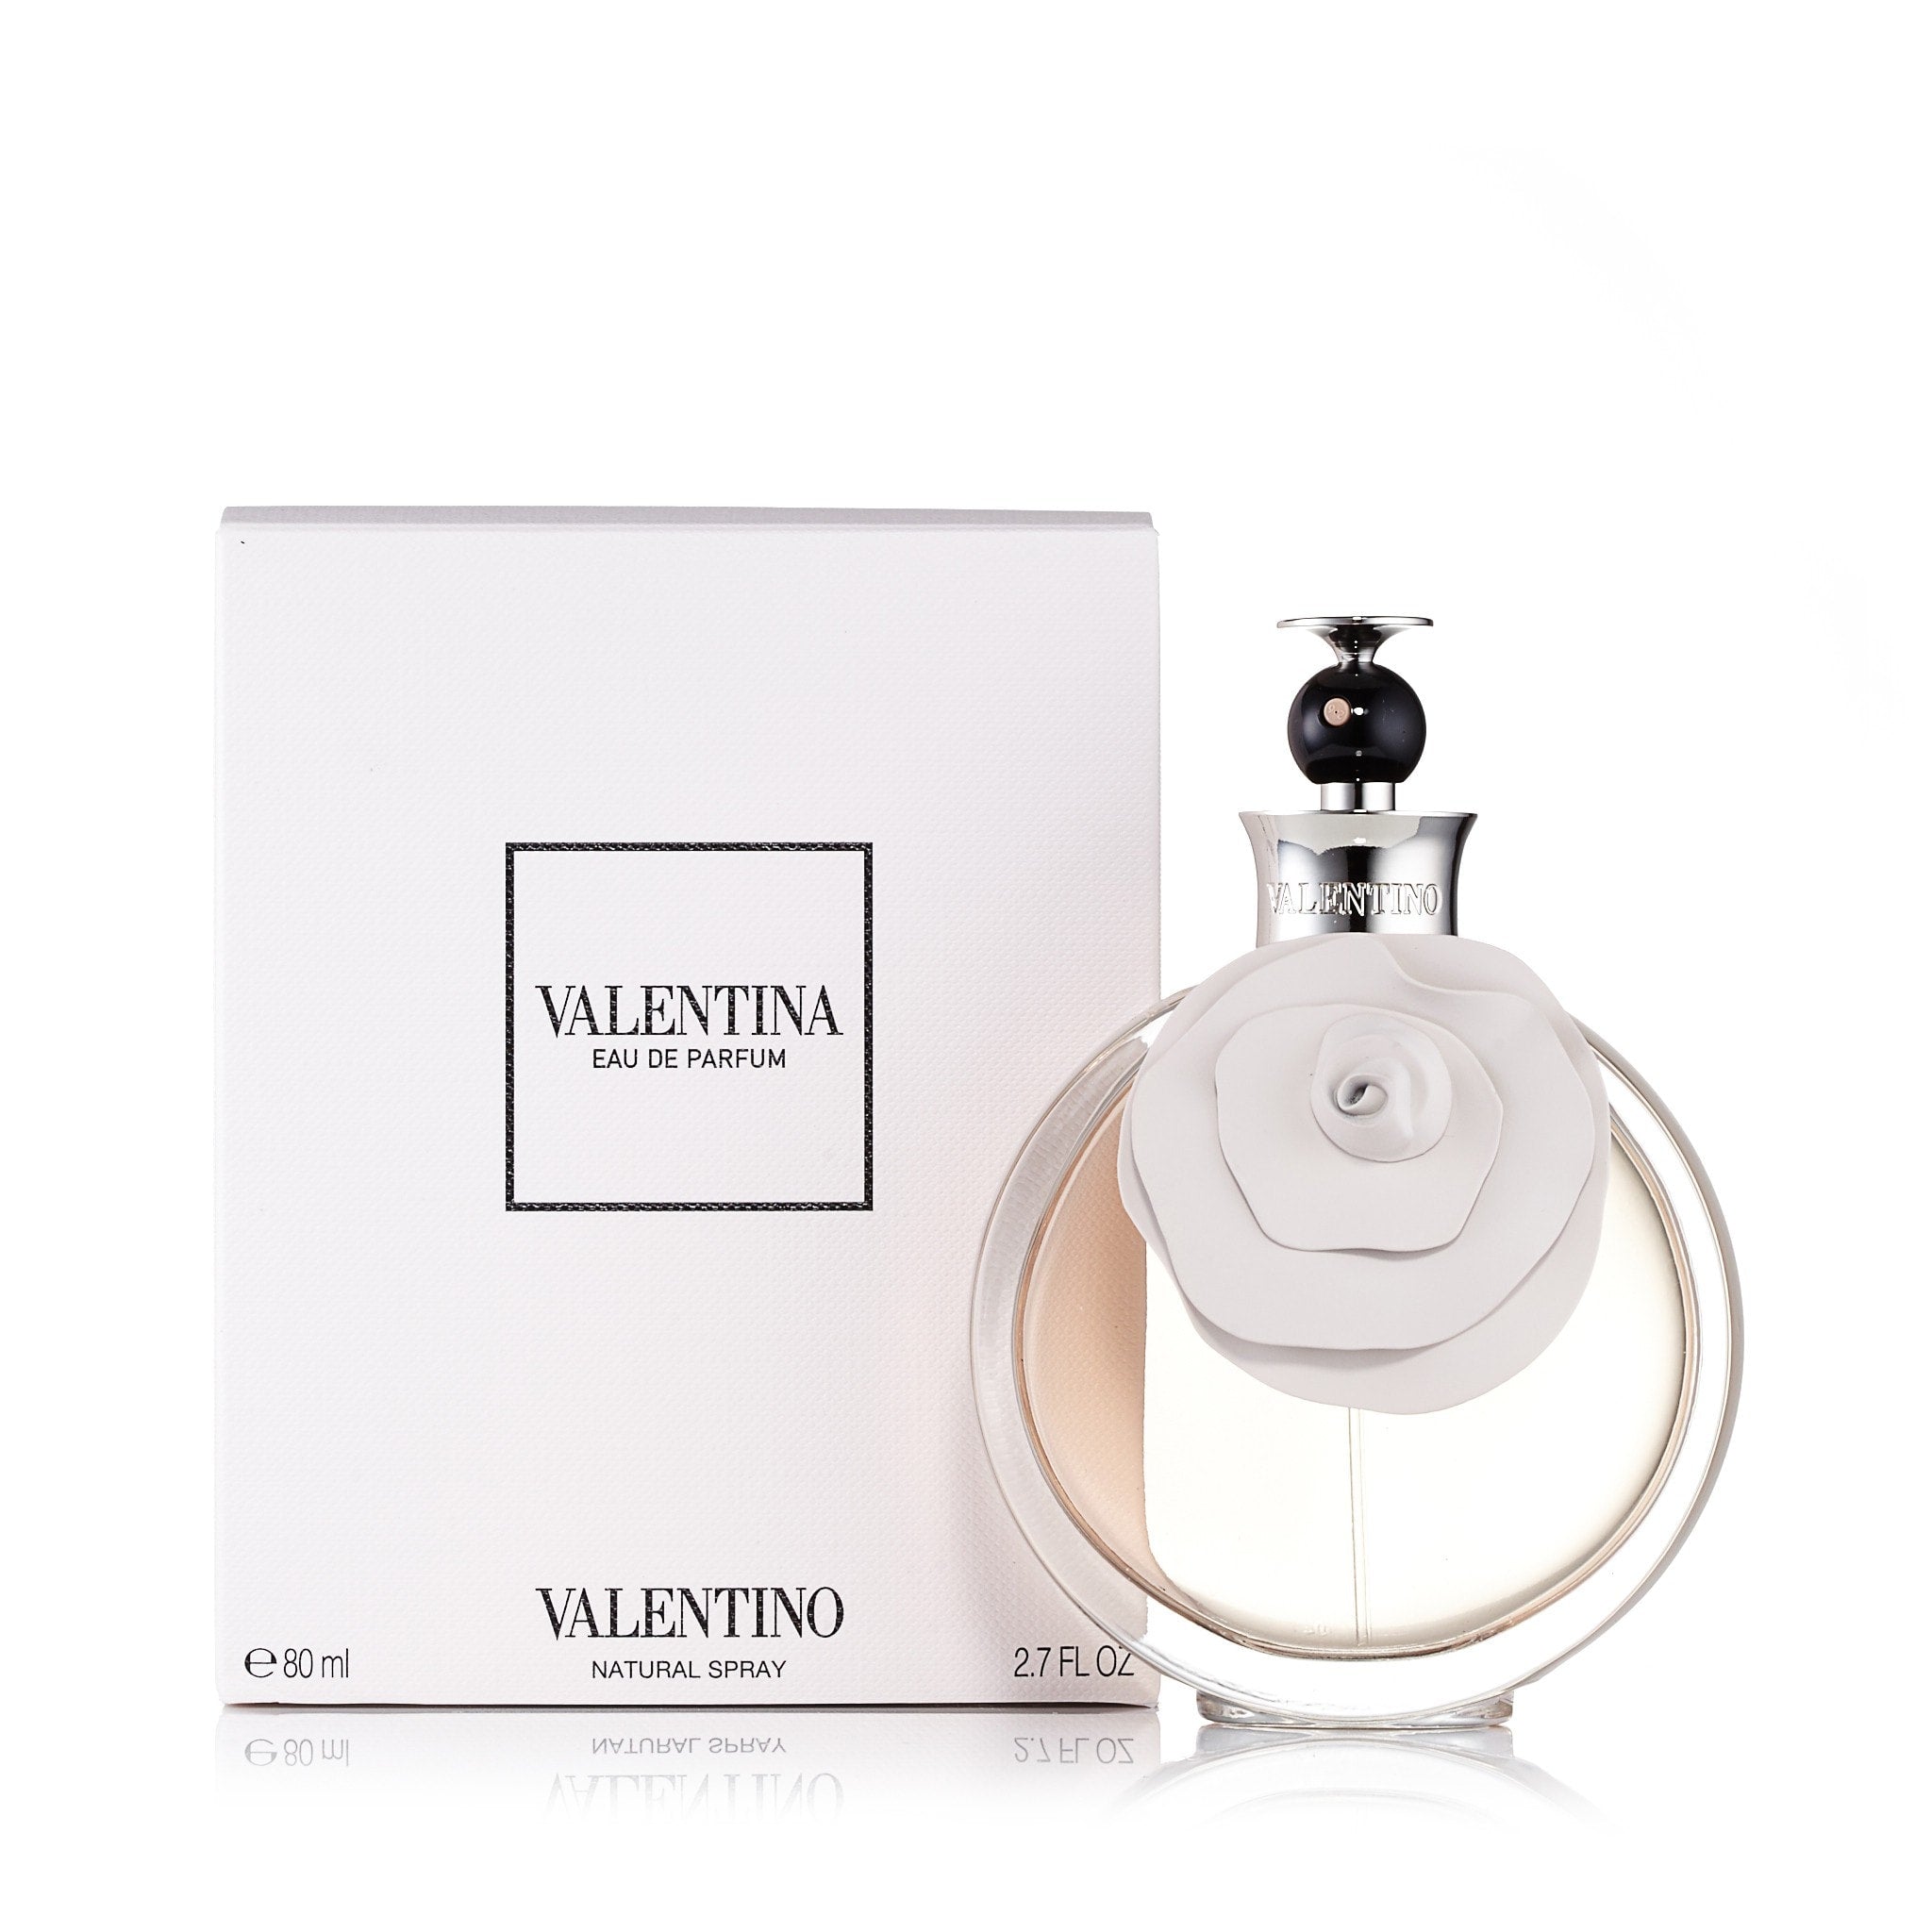 Krympe Urimelig klassisk Valentina Eau de Parfum Spray for Women by Valentino – Fragrance Outlet